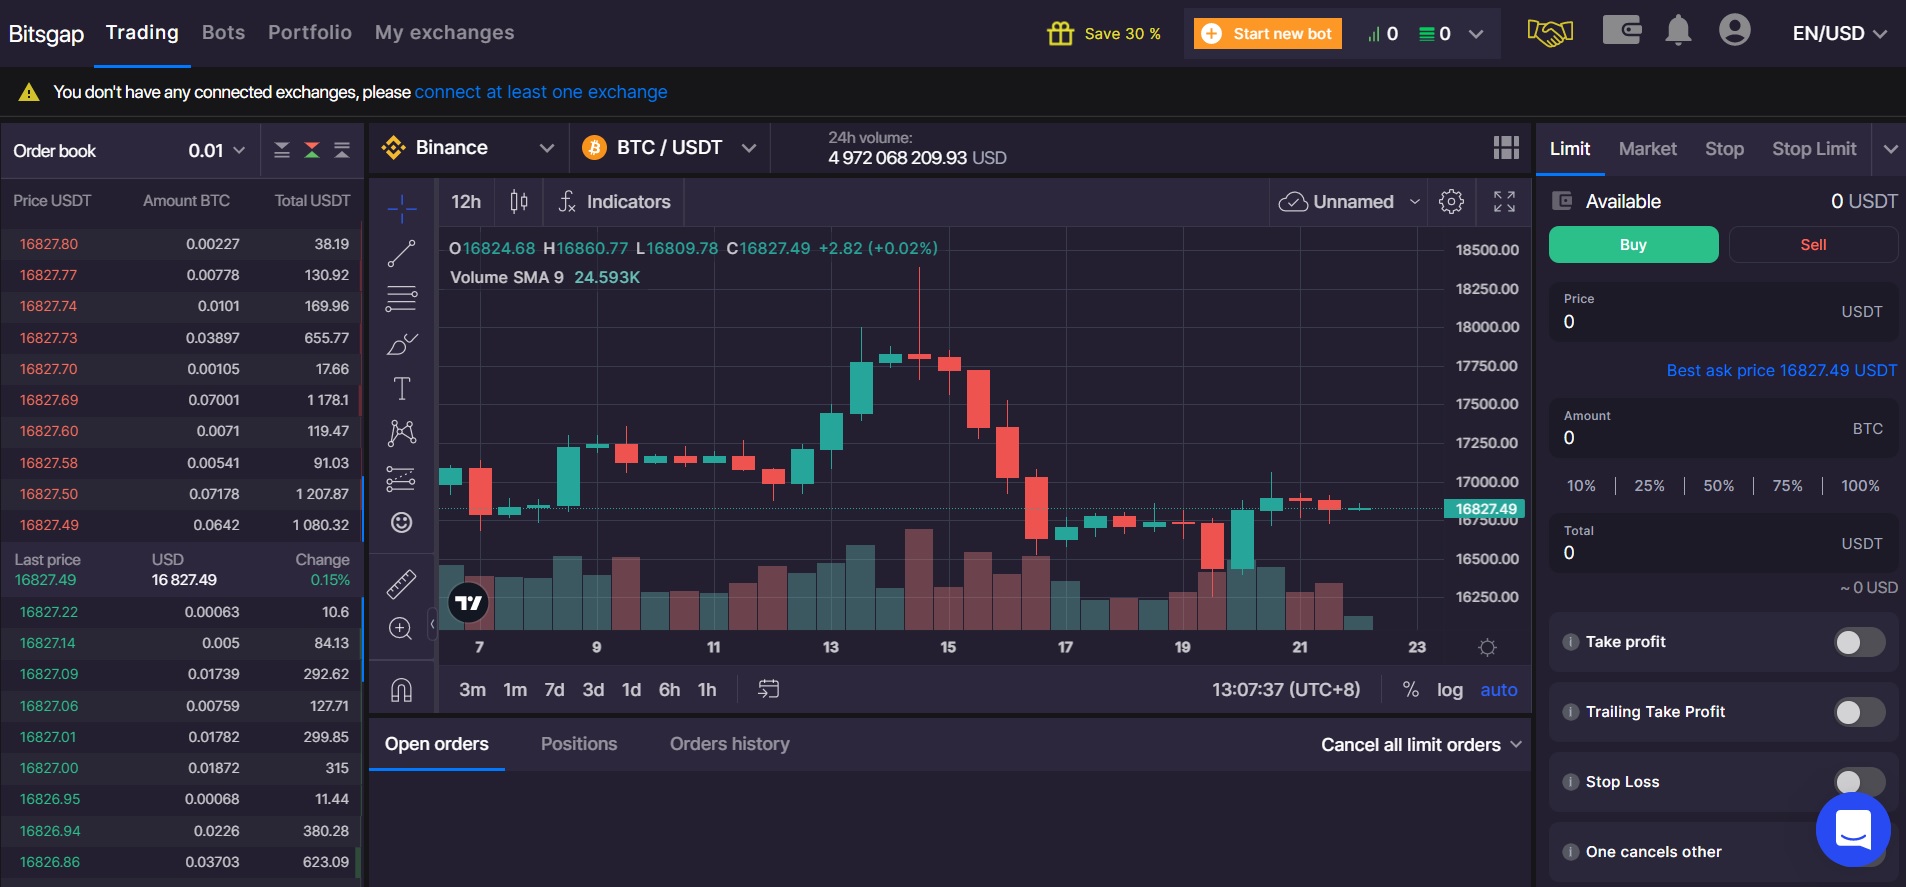 Bitsgap trading platform screenshot